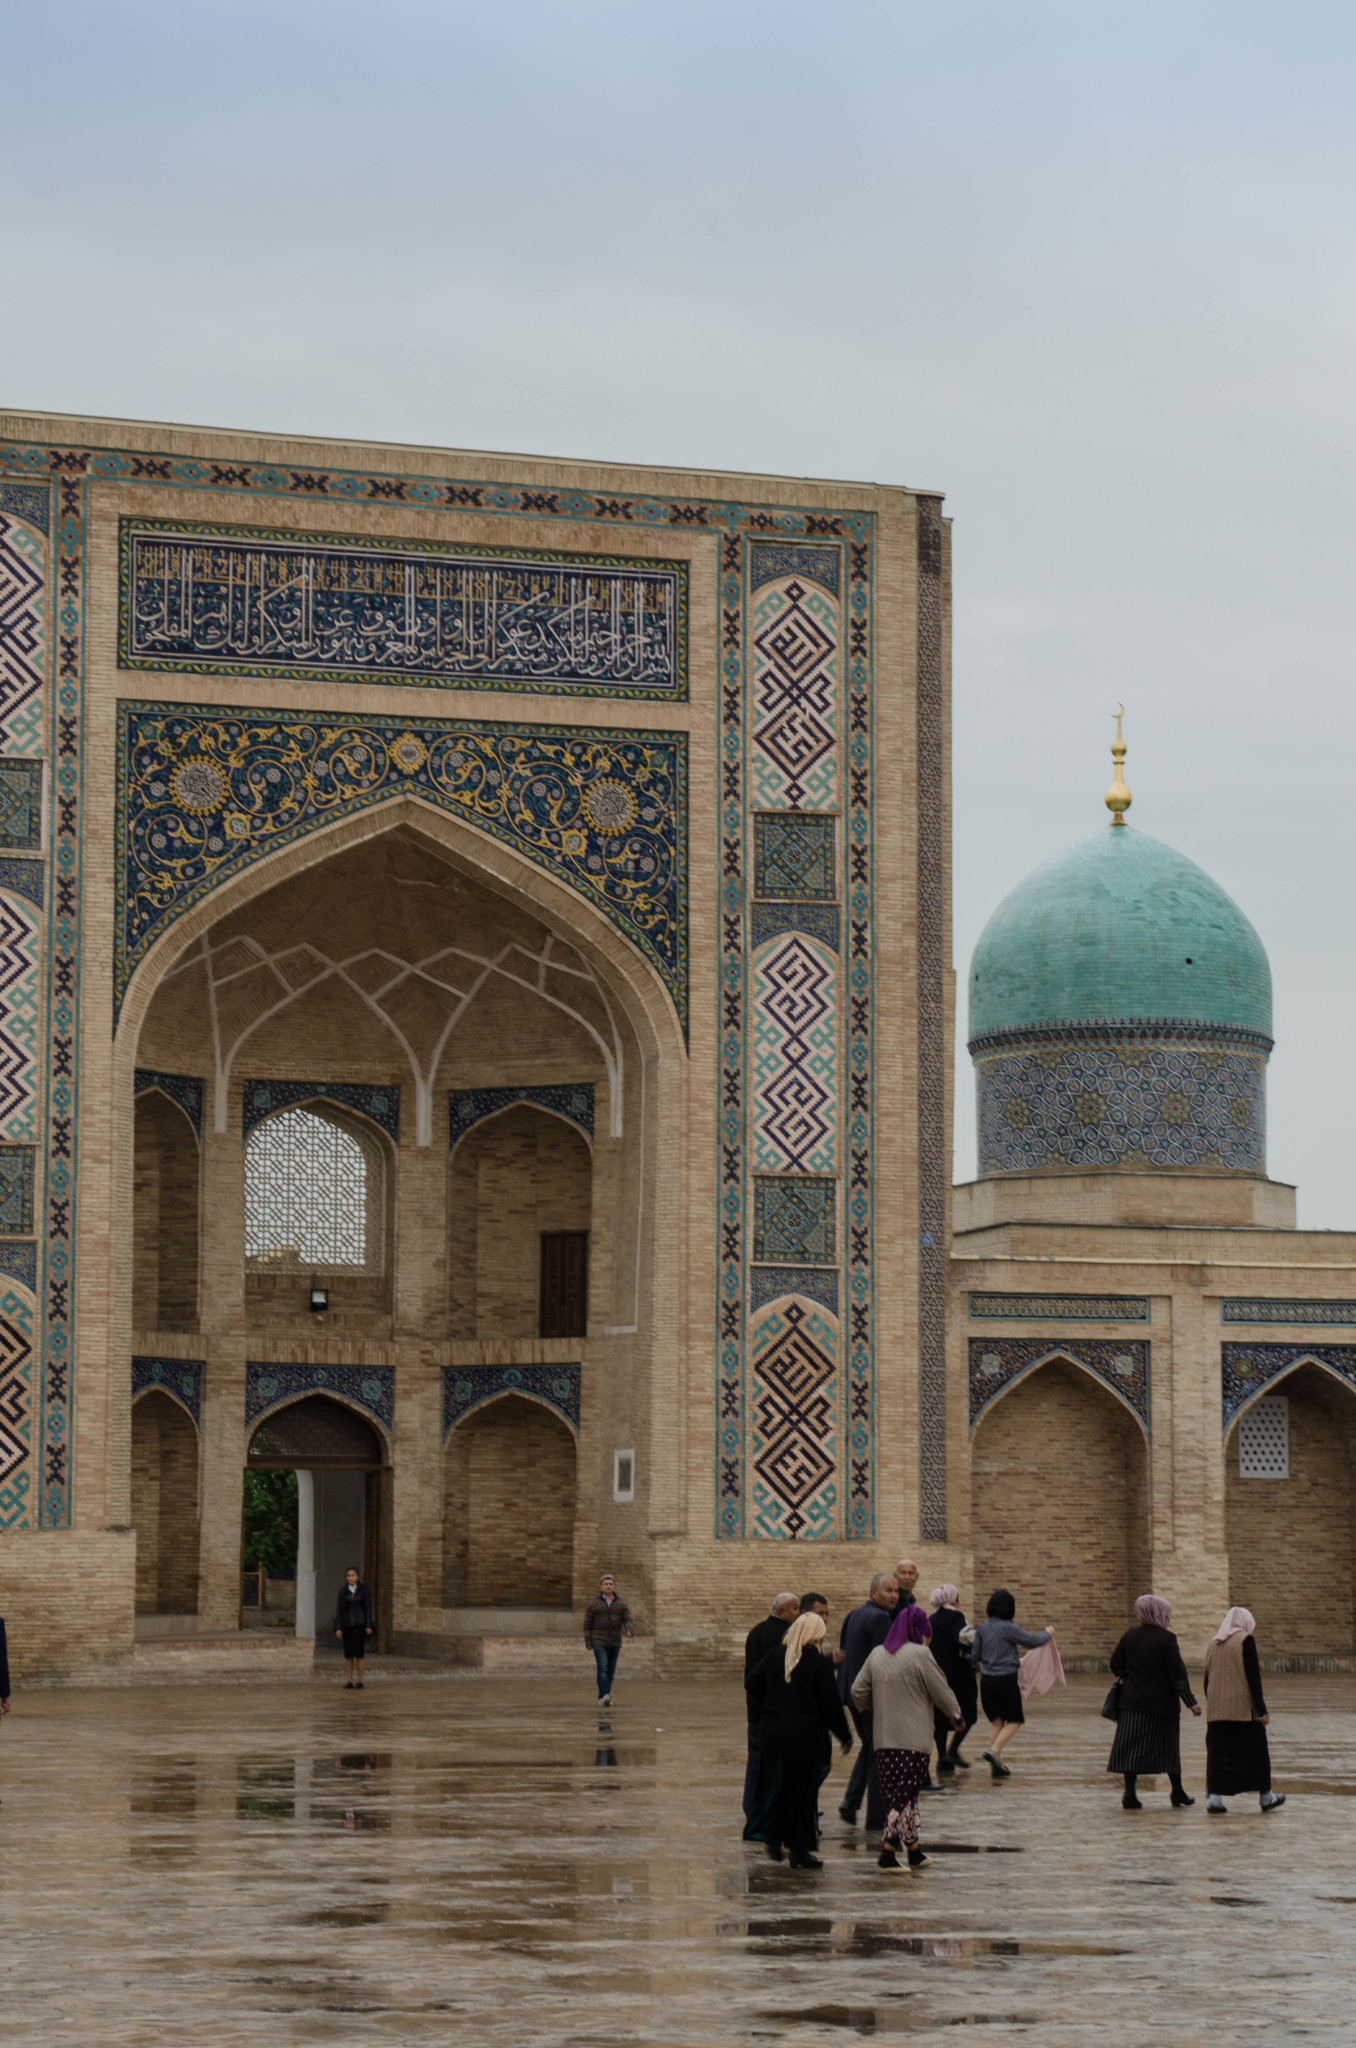 Khast Imam Palast in Taschkent